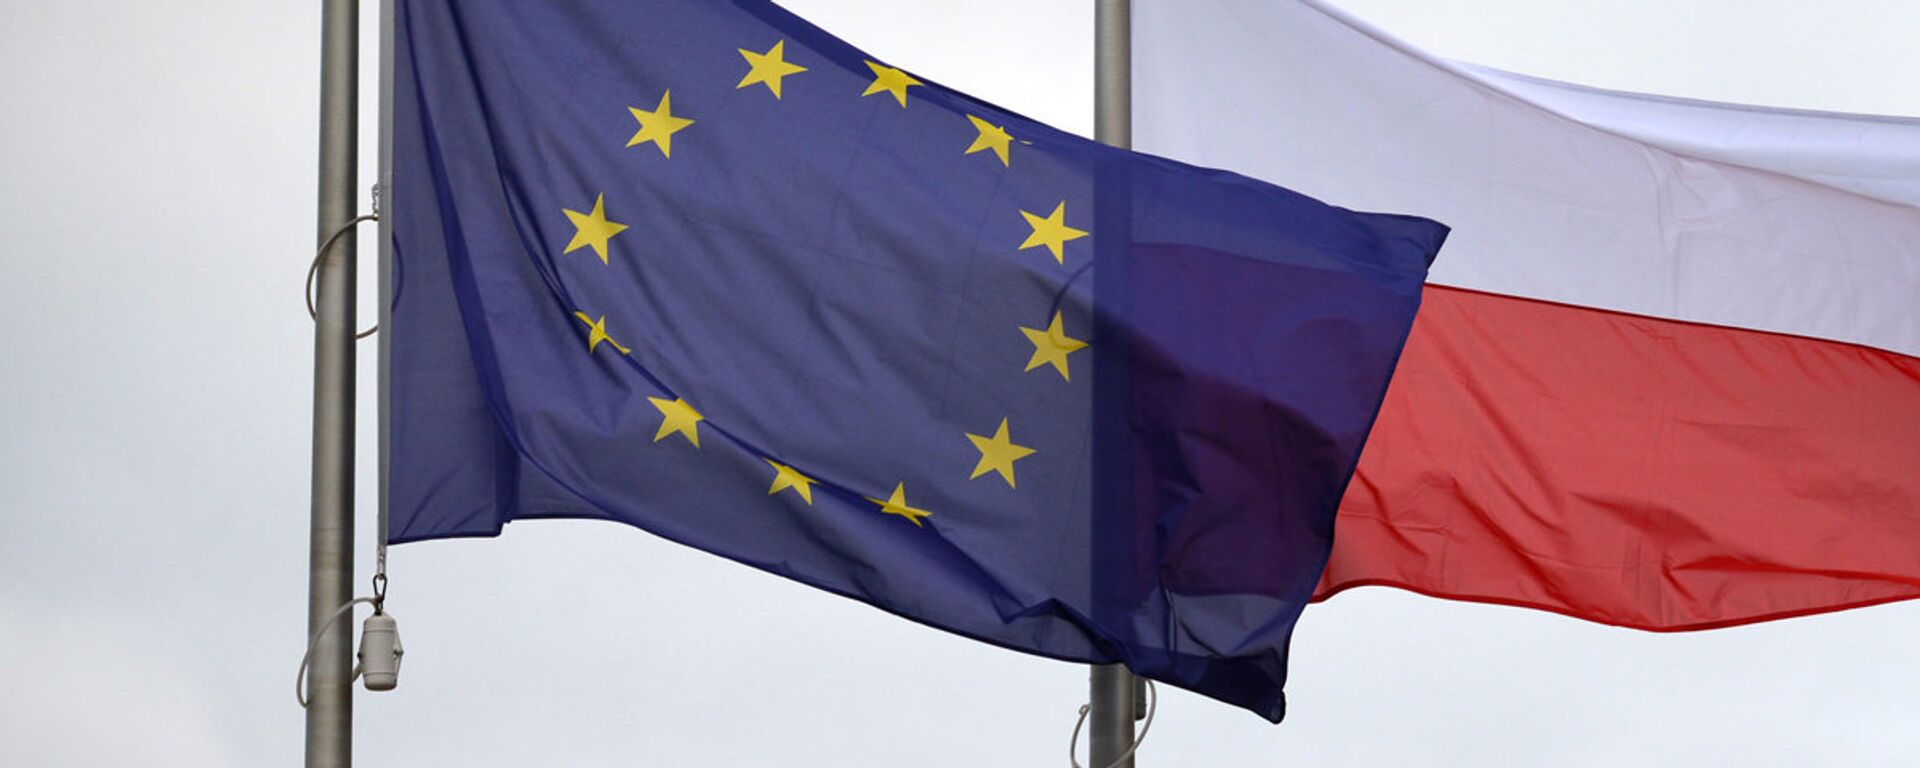 Флаги Евросоюза и Польши - Sputnik Latvija, 1920, 29.12.2021